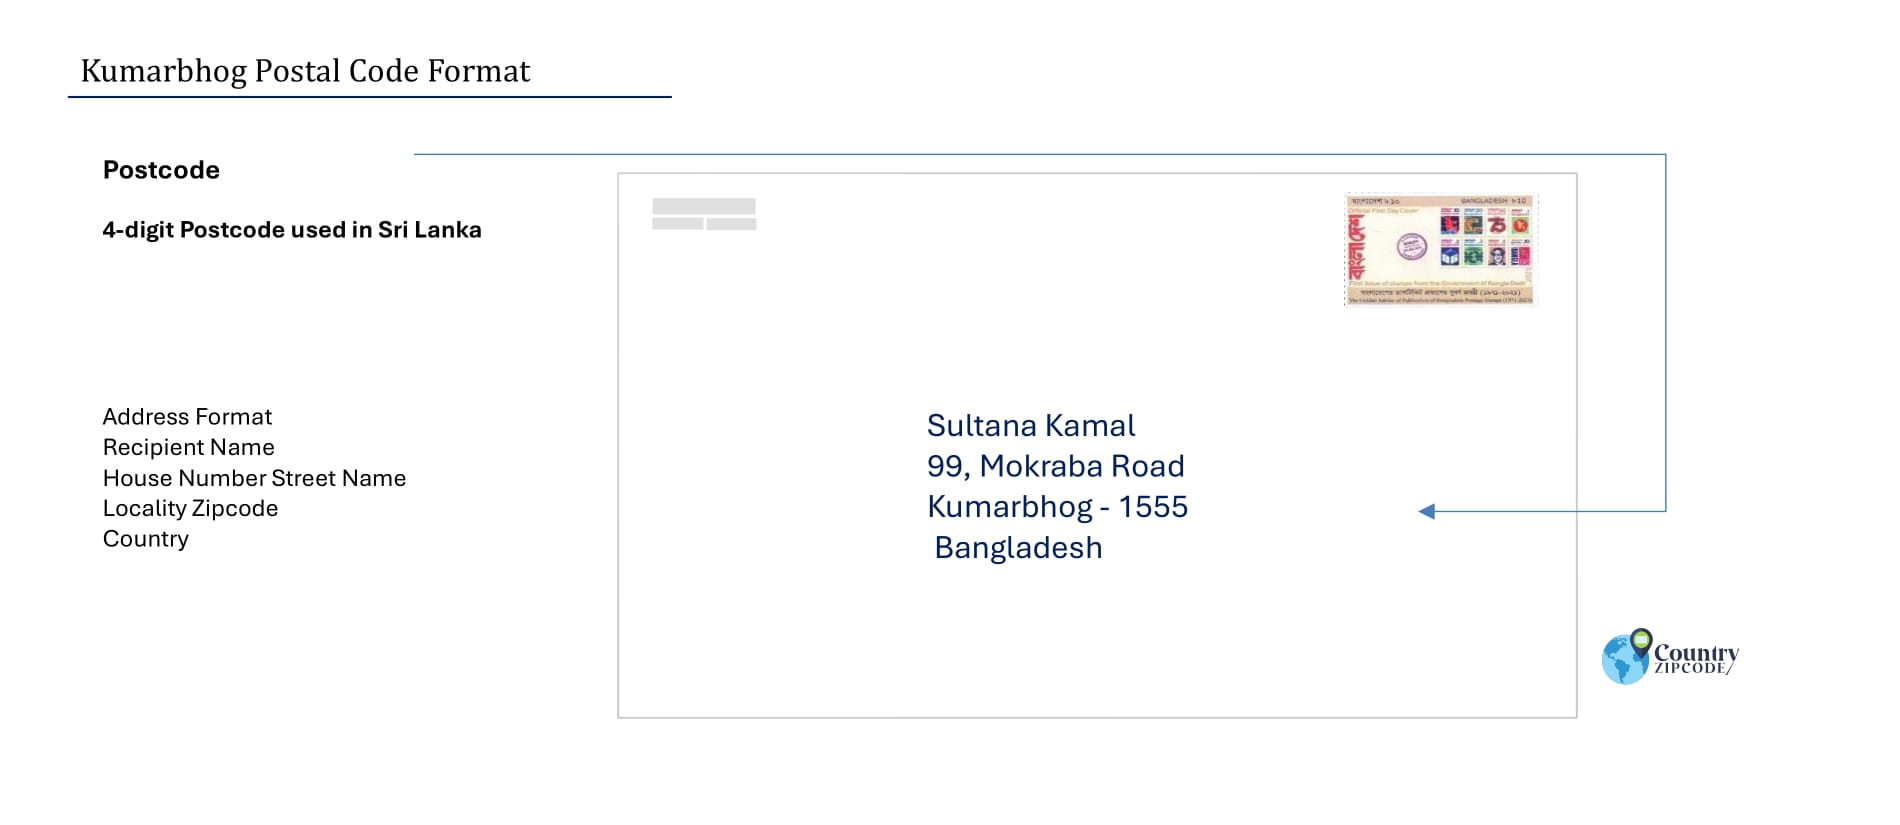 Kumarbhog Postal code format